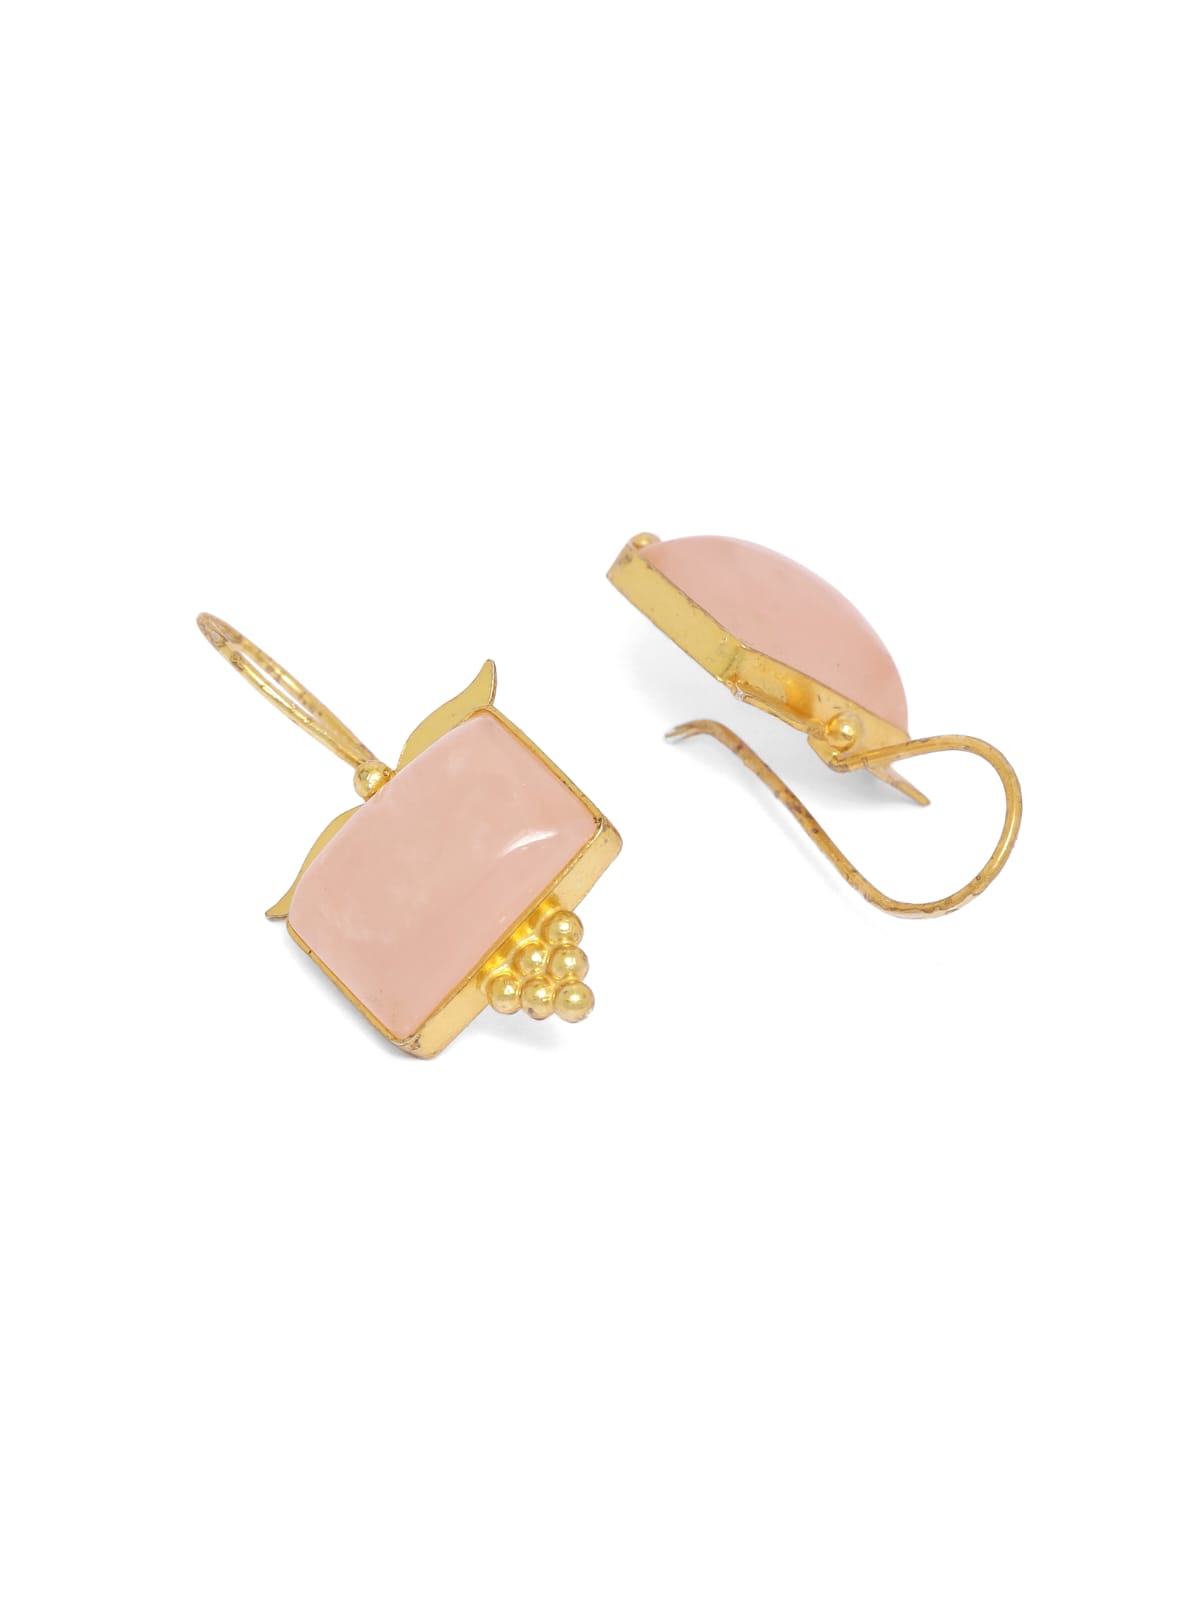 92.5 Gold plated rose Quartz hook earrings.